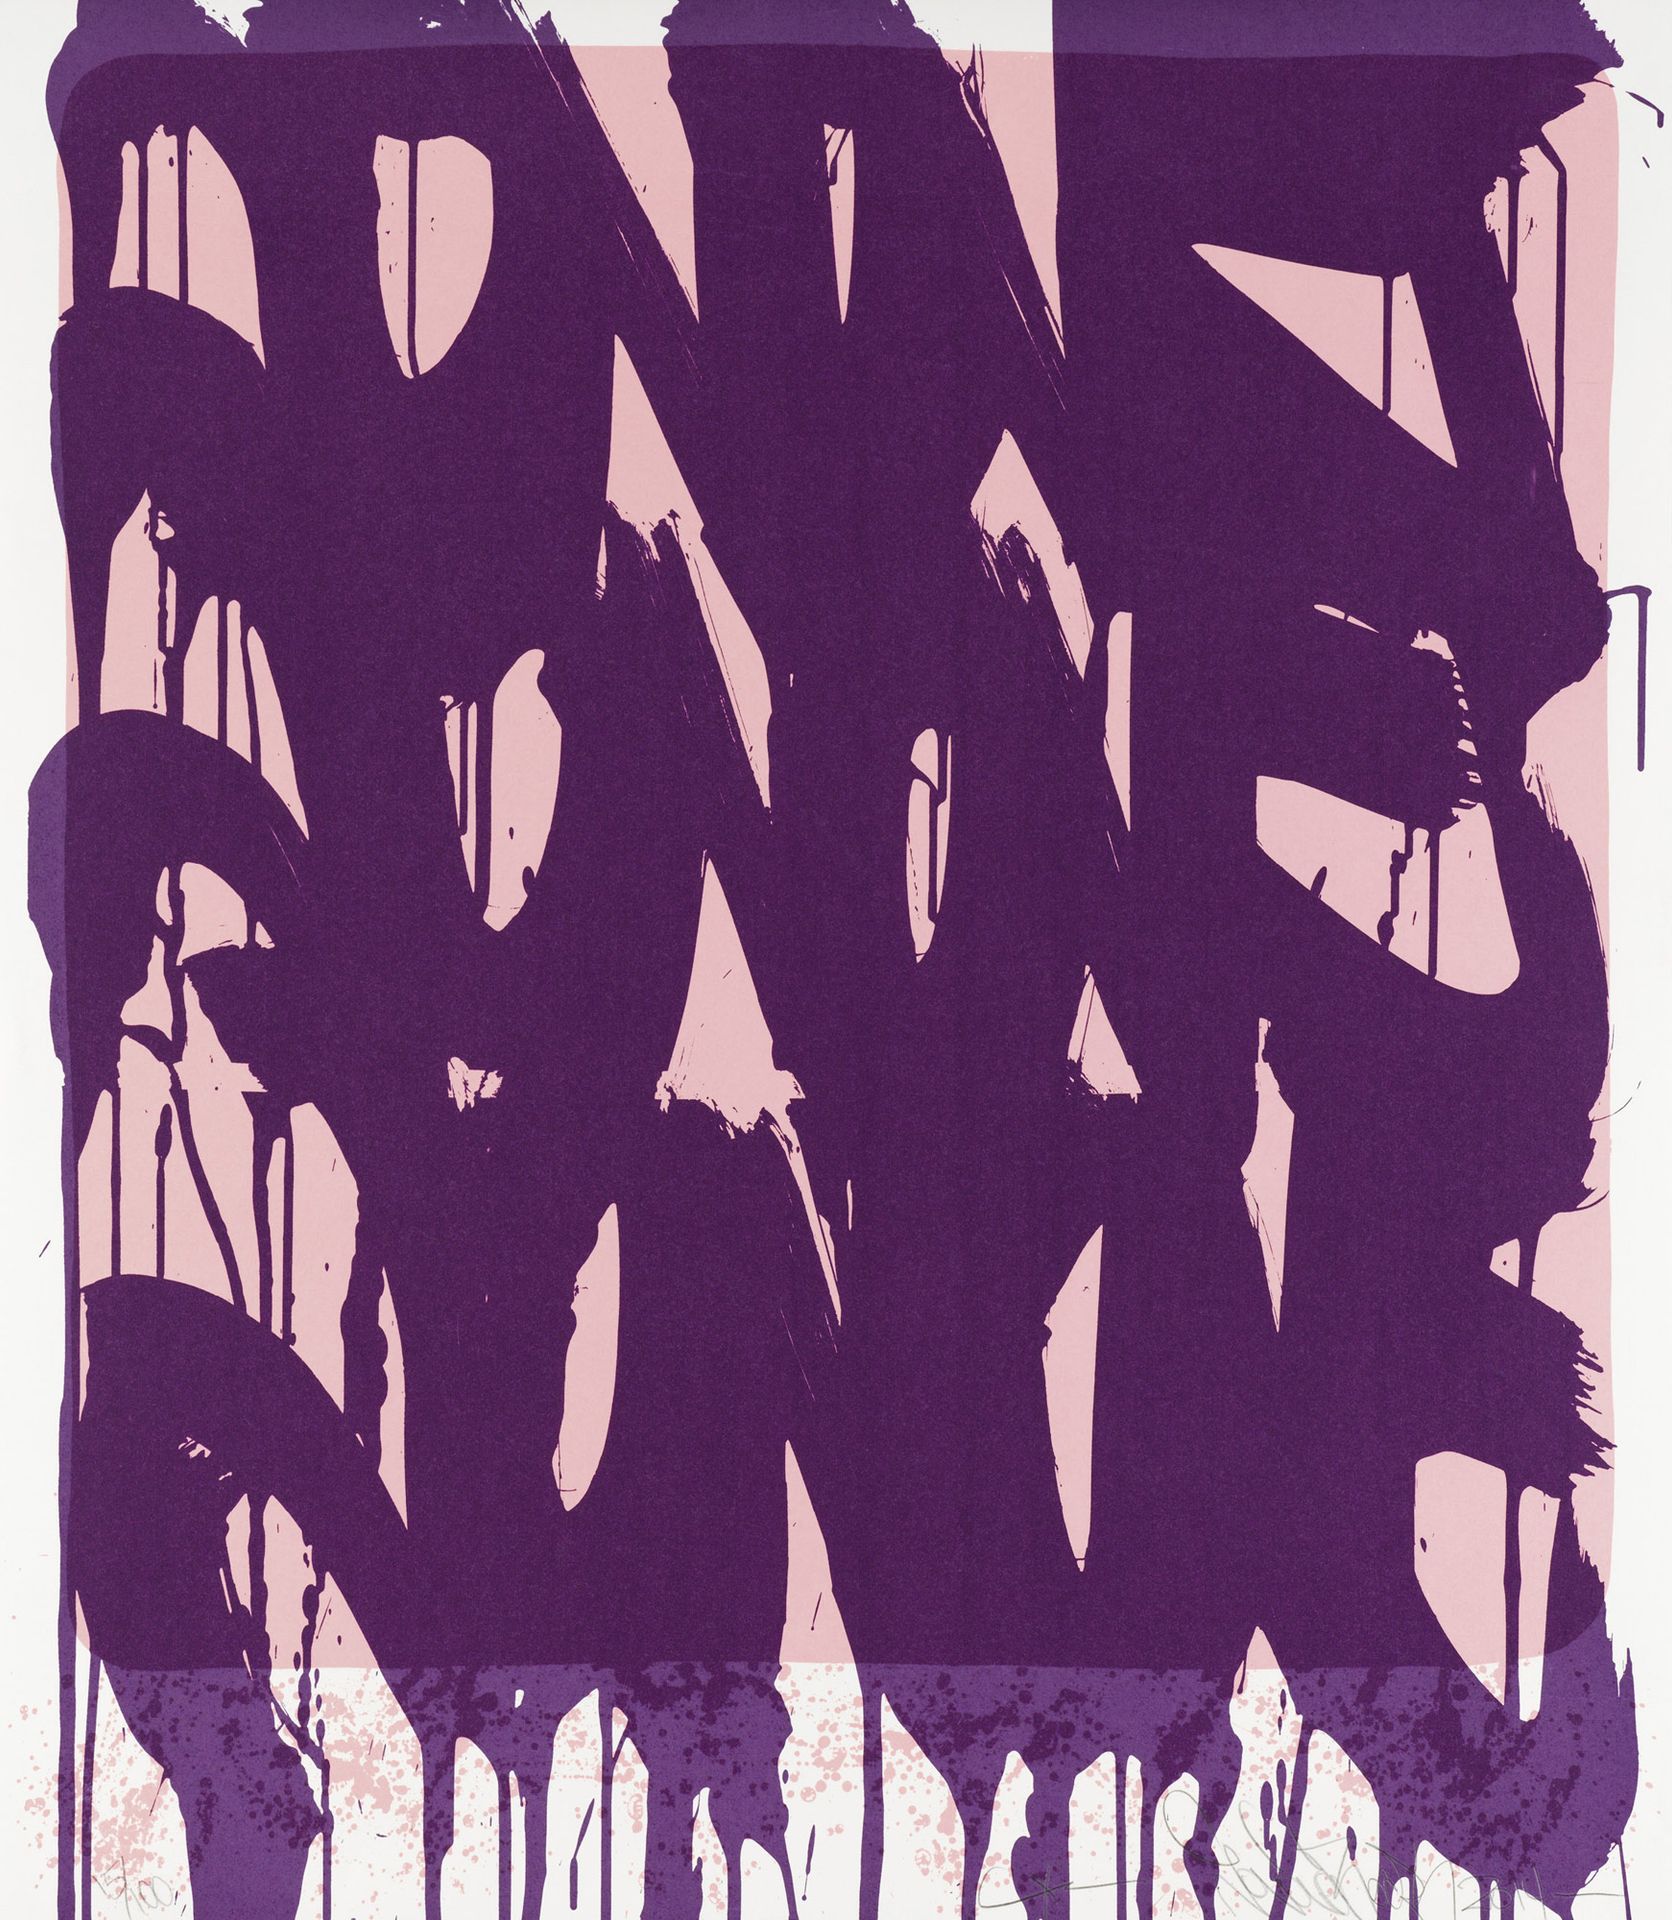 JONONE (ANDREW PERELLO DIT) (NE EN 1963) DRIPPING TAGS, 2014
Siebdruck auf Papie&hellip;